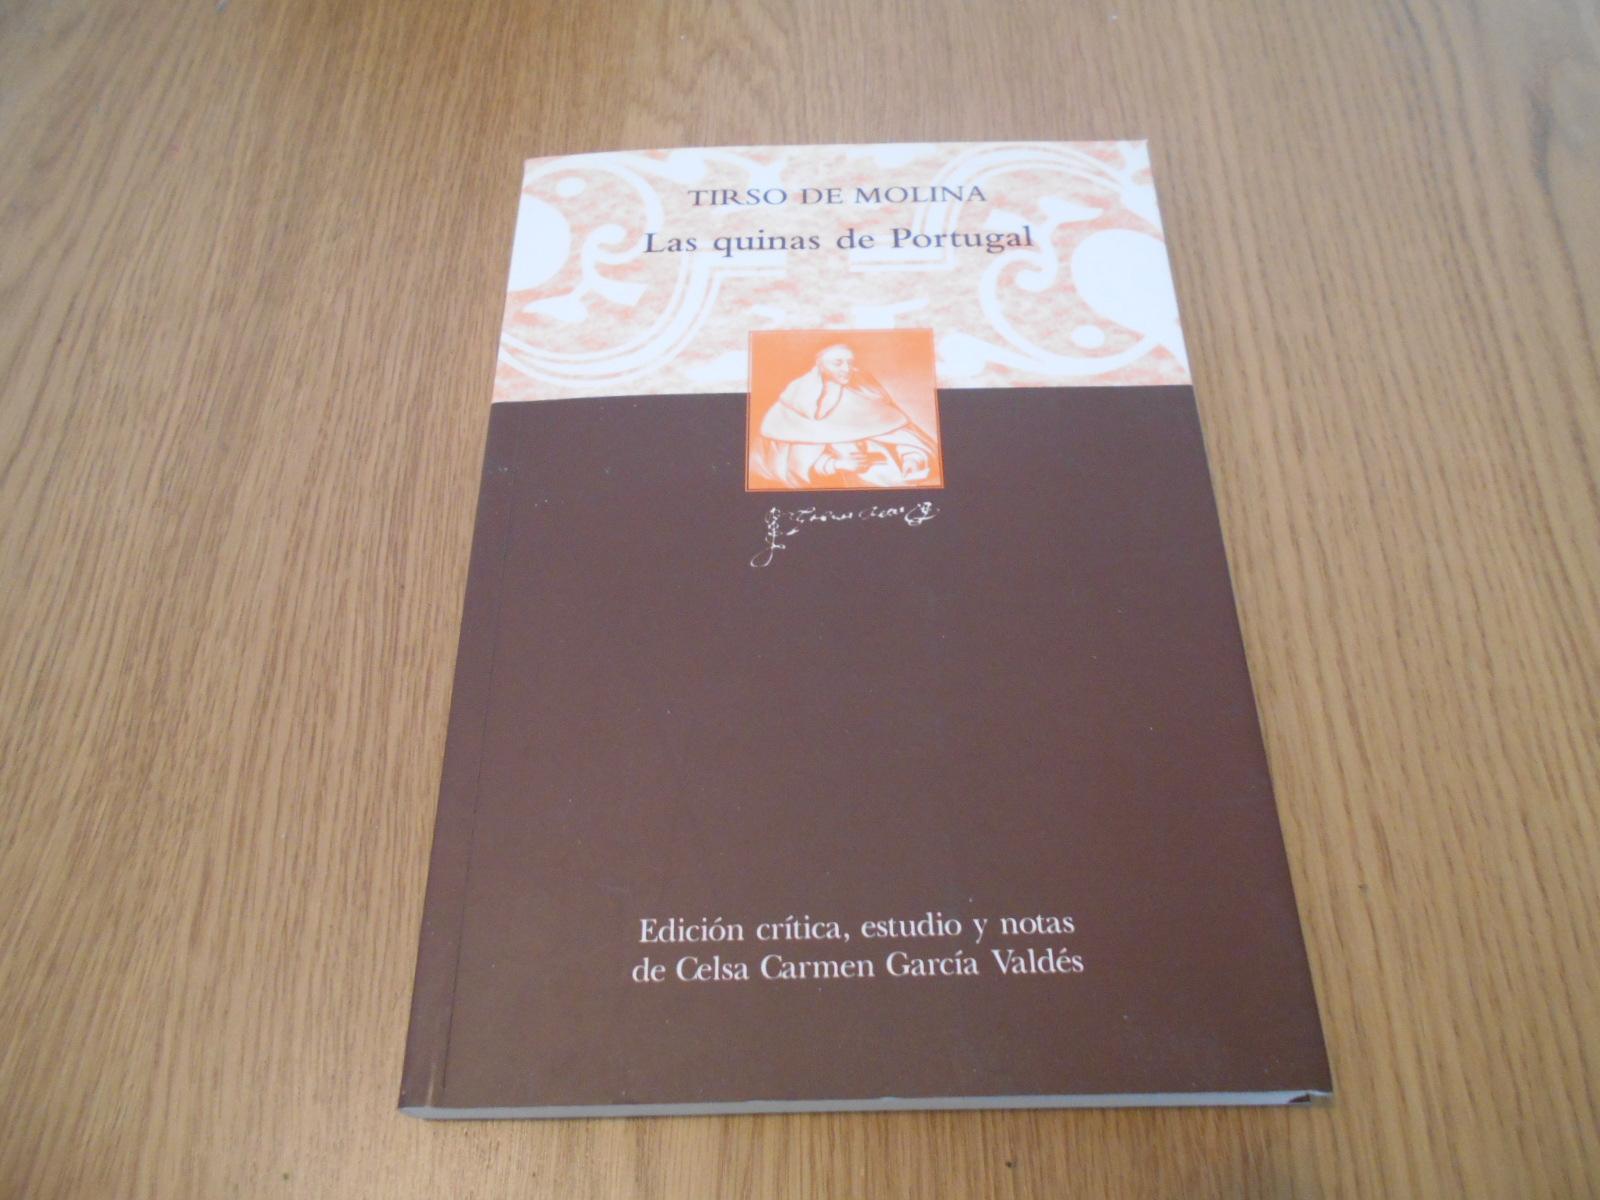 Las quinas de Portugal. Edición crítica, estudio y notas de Celsa Carmen García Valdés. - Molina, Tirso de